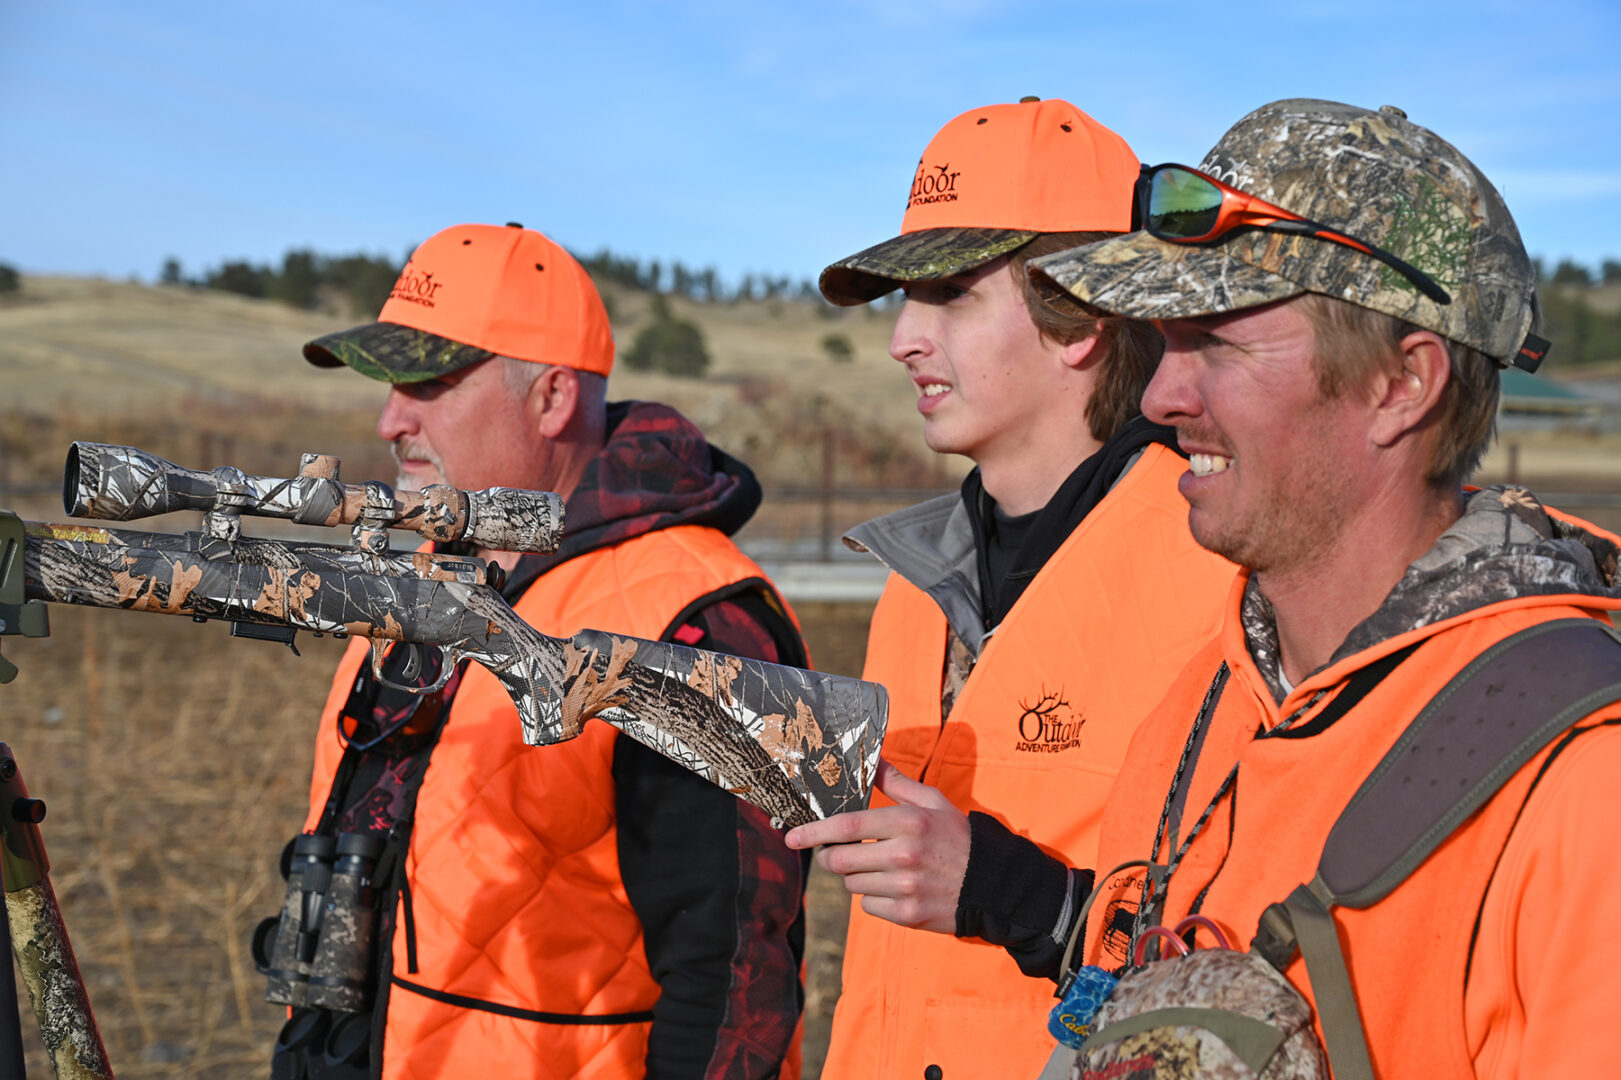 A group of men in orange vests holding guns.